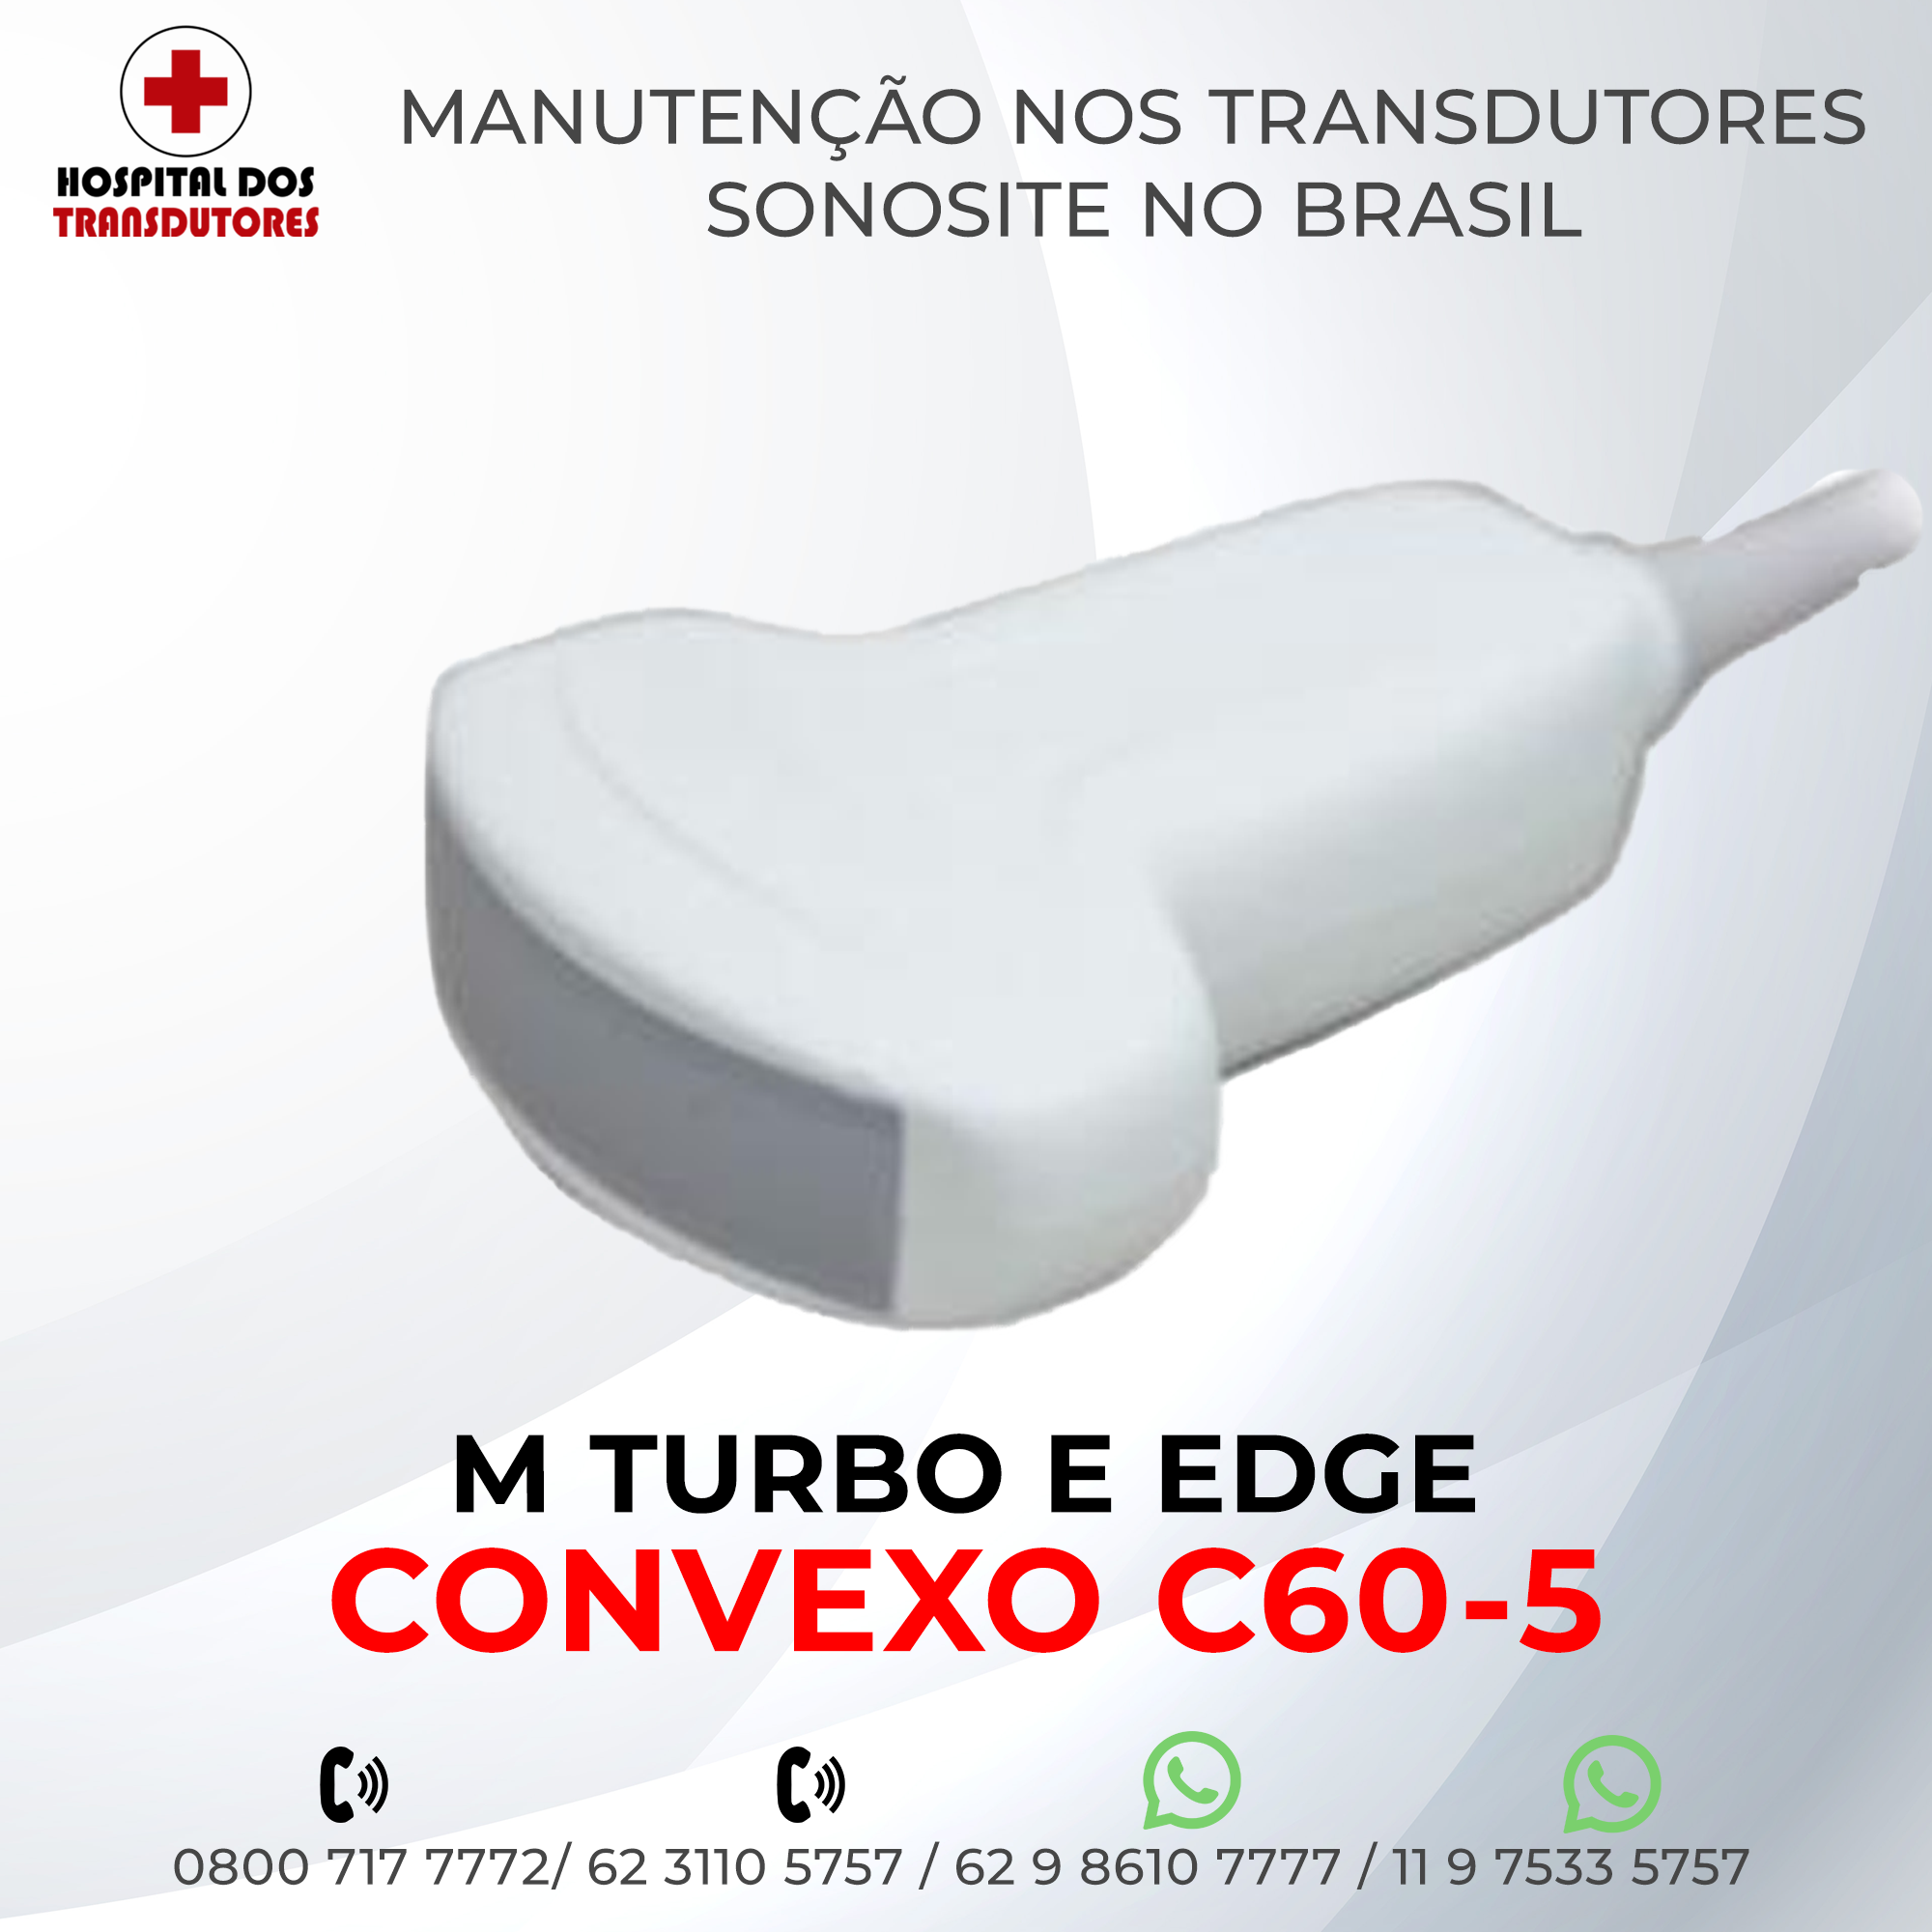 5-TRANSDUTOR-SONOSITE-CONVEXO-C60-5-MTURBO-EDGE